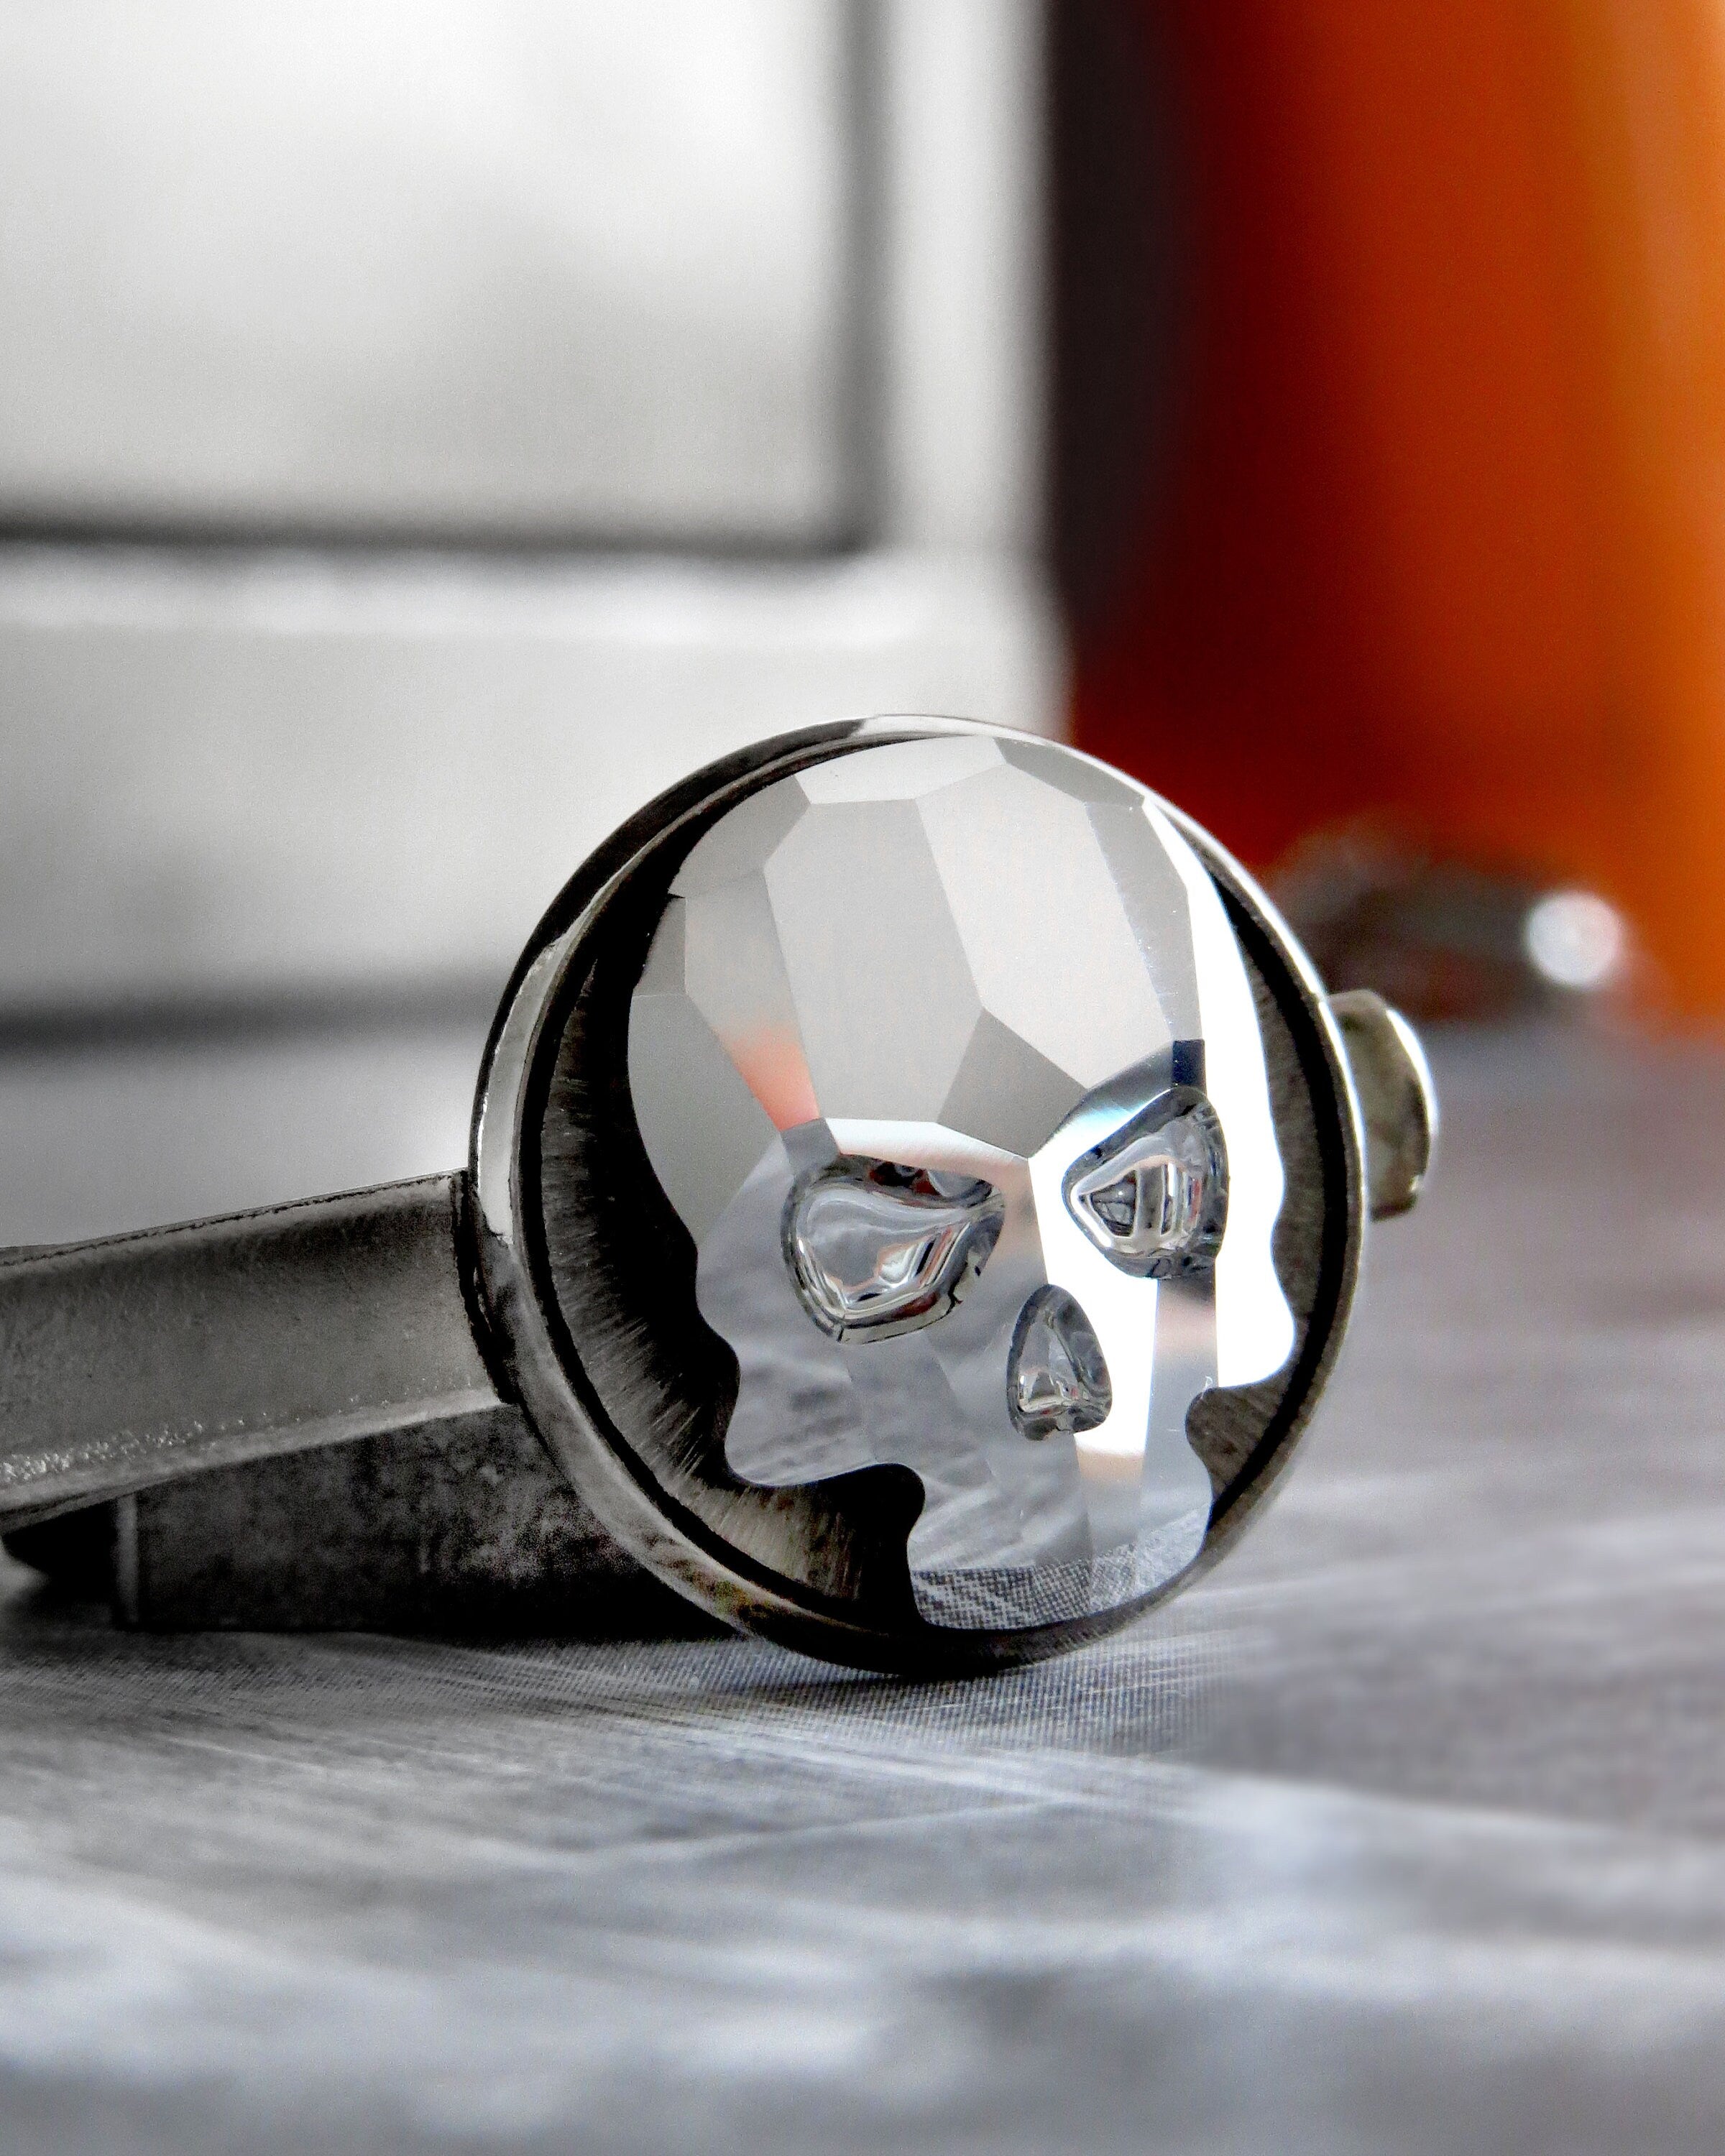 Crystal Skull Tie Clip - Skull Tie Tack 2 Colors: Black Night or Metallic Silver Crystal - Goth Groom Groomsmen Skull Formal Mens Menswear